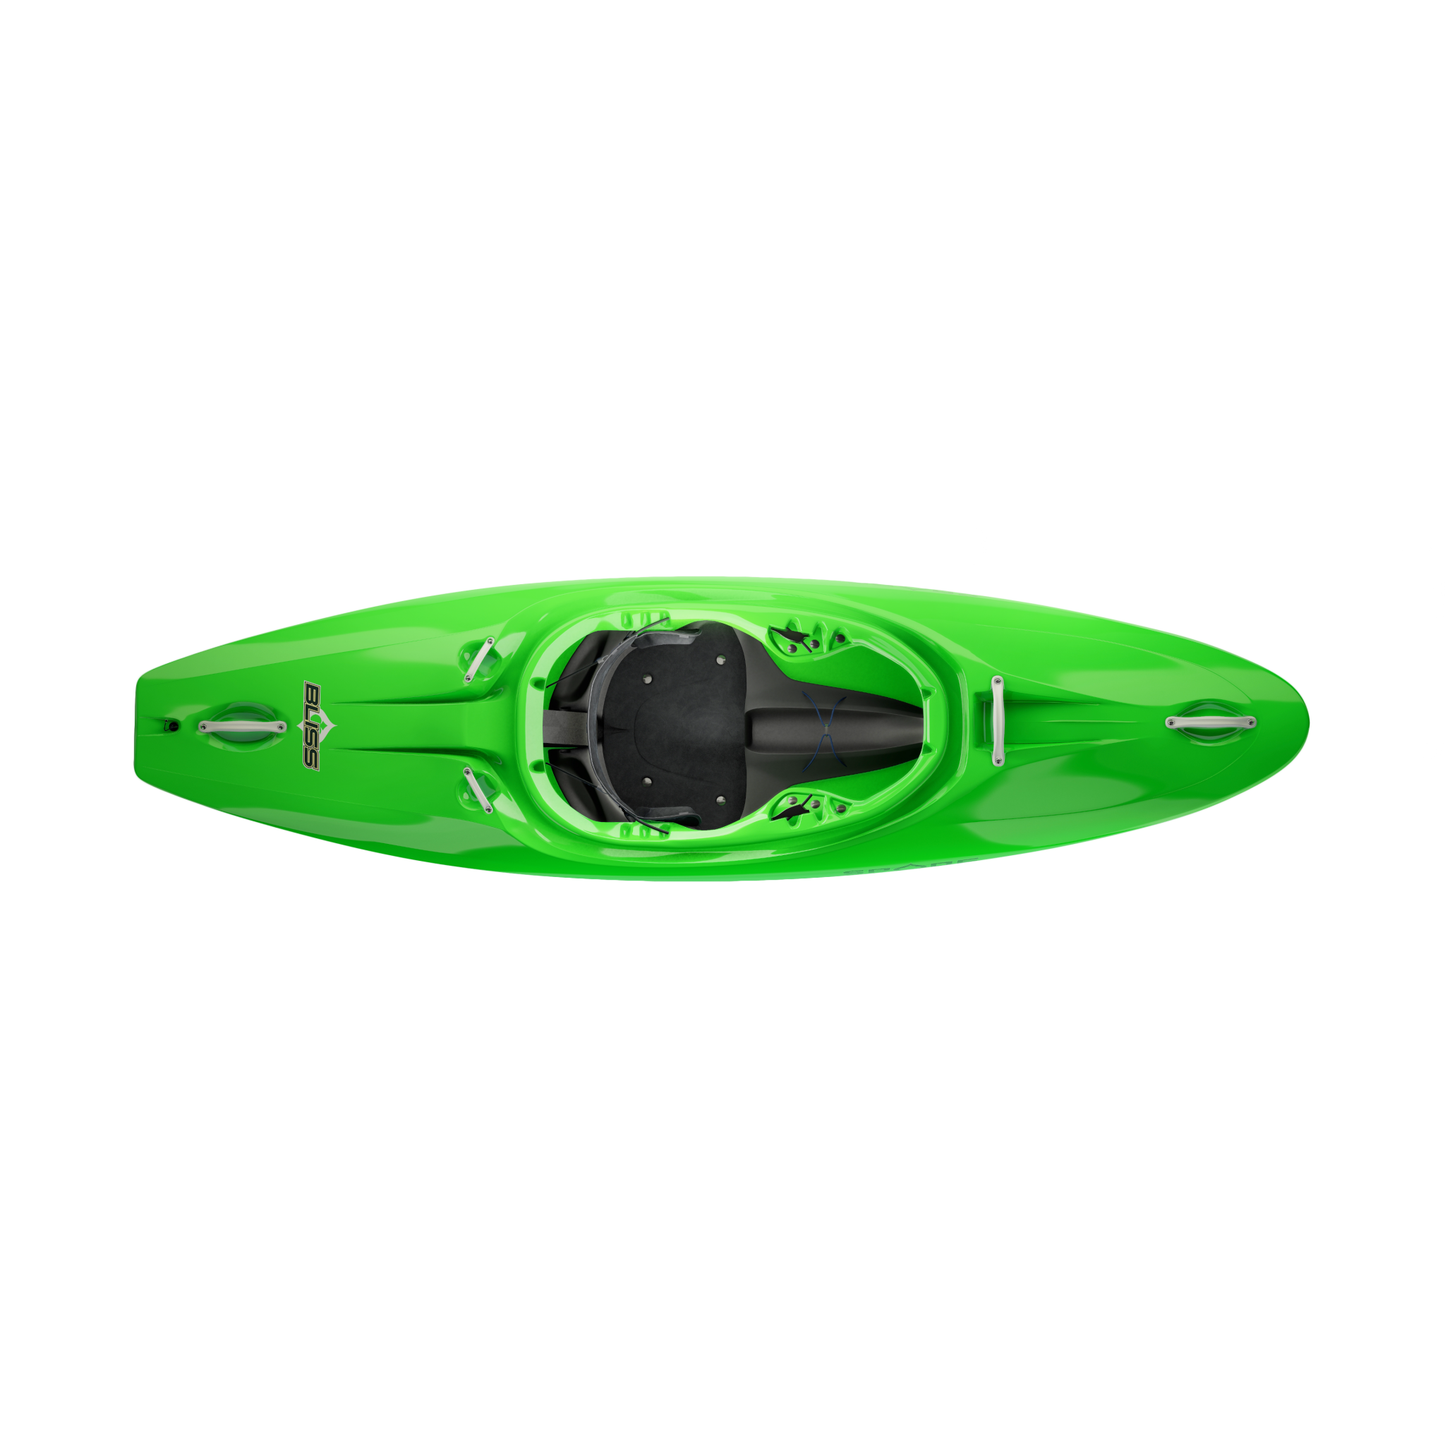 The Bliss Whitewater Kayak - Spade Kayaks